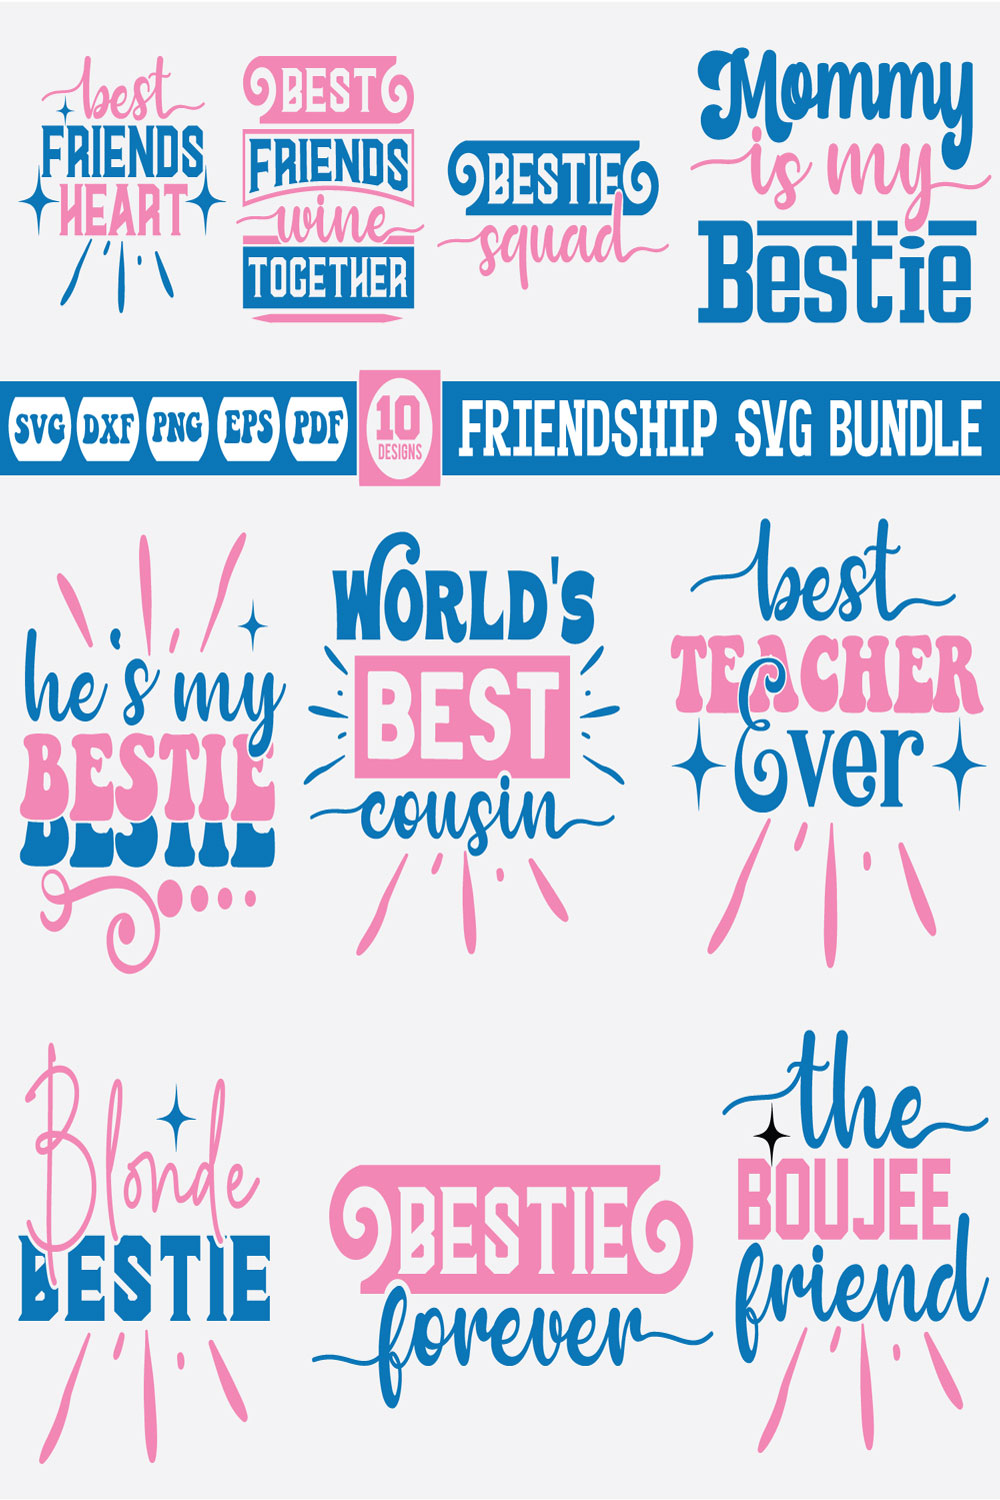 Friendship SVG Bundle pinterest preview image.